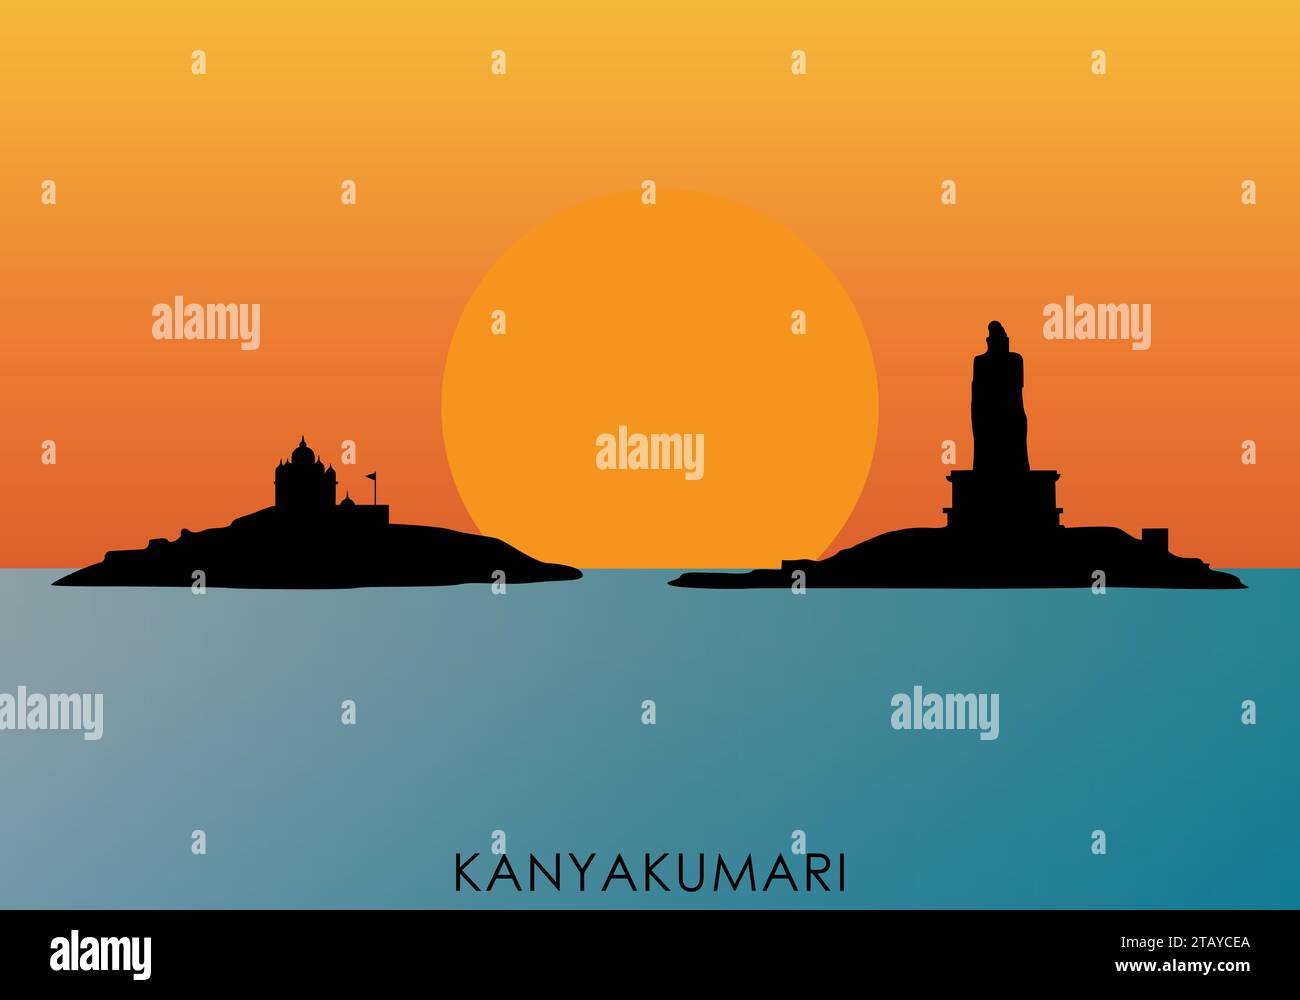 Illustrazione di una silhouette dell'alba di Kanyakumari con la statua di Thiruvalluvar e il Memoriale di Vivekanandha Illustrazione Vettoriale